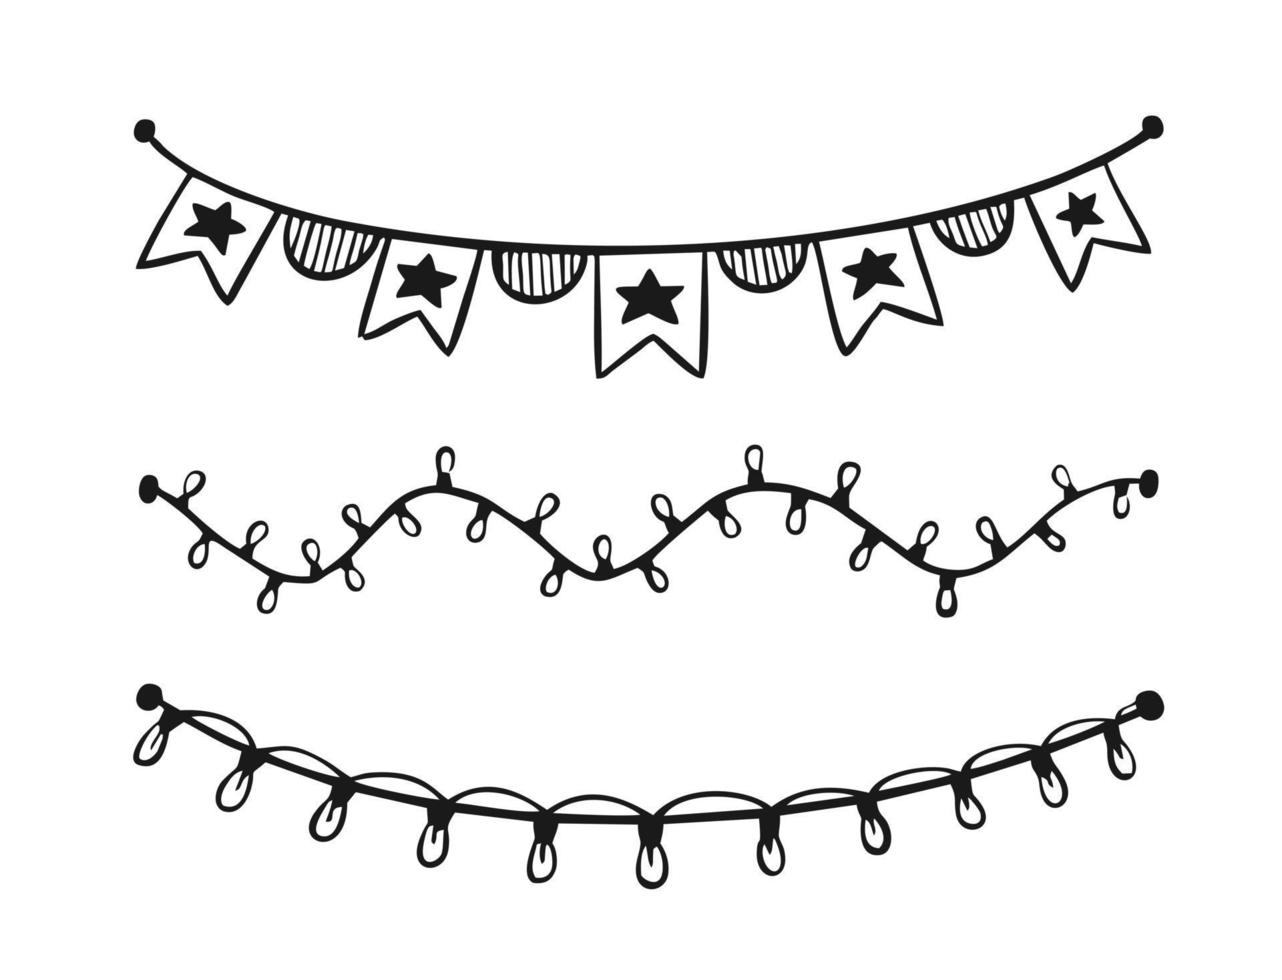 guirlanda festiva pintada em estilo doodle isolado na ilustração vetorial de fundo branco para decoração de férias de carnaval festival de aniversário. vetor